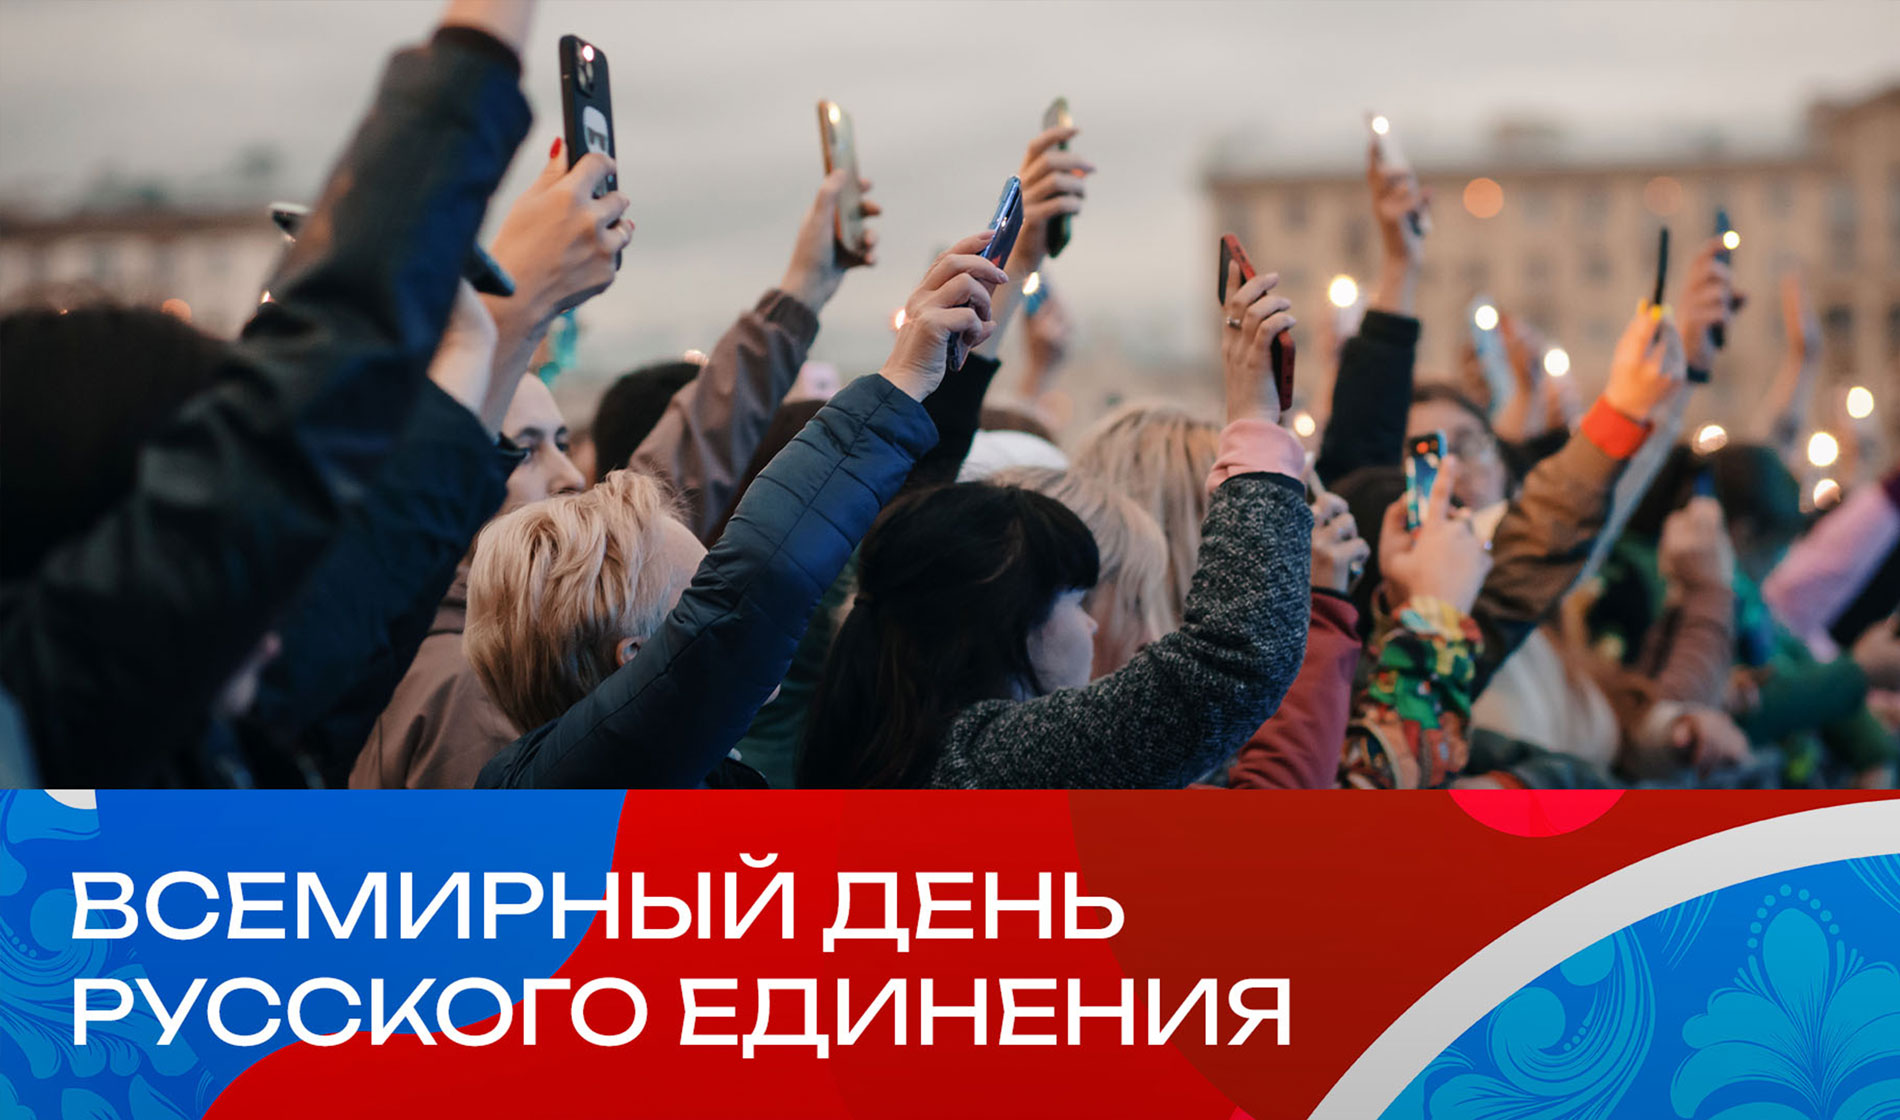 Всемирный день русского единения отпразднуют в столице